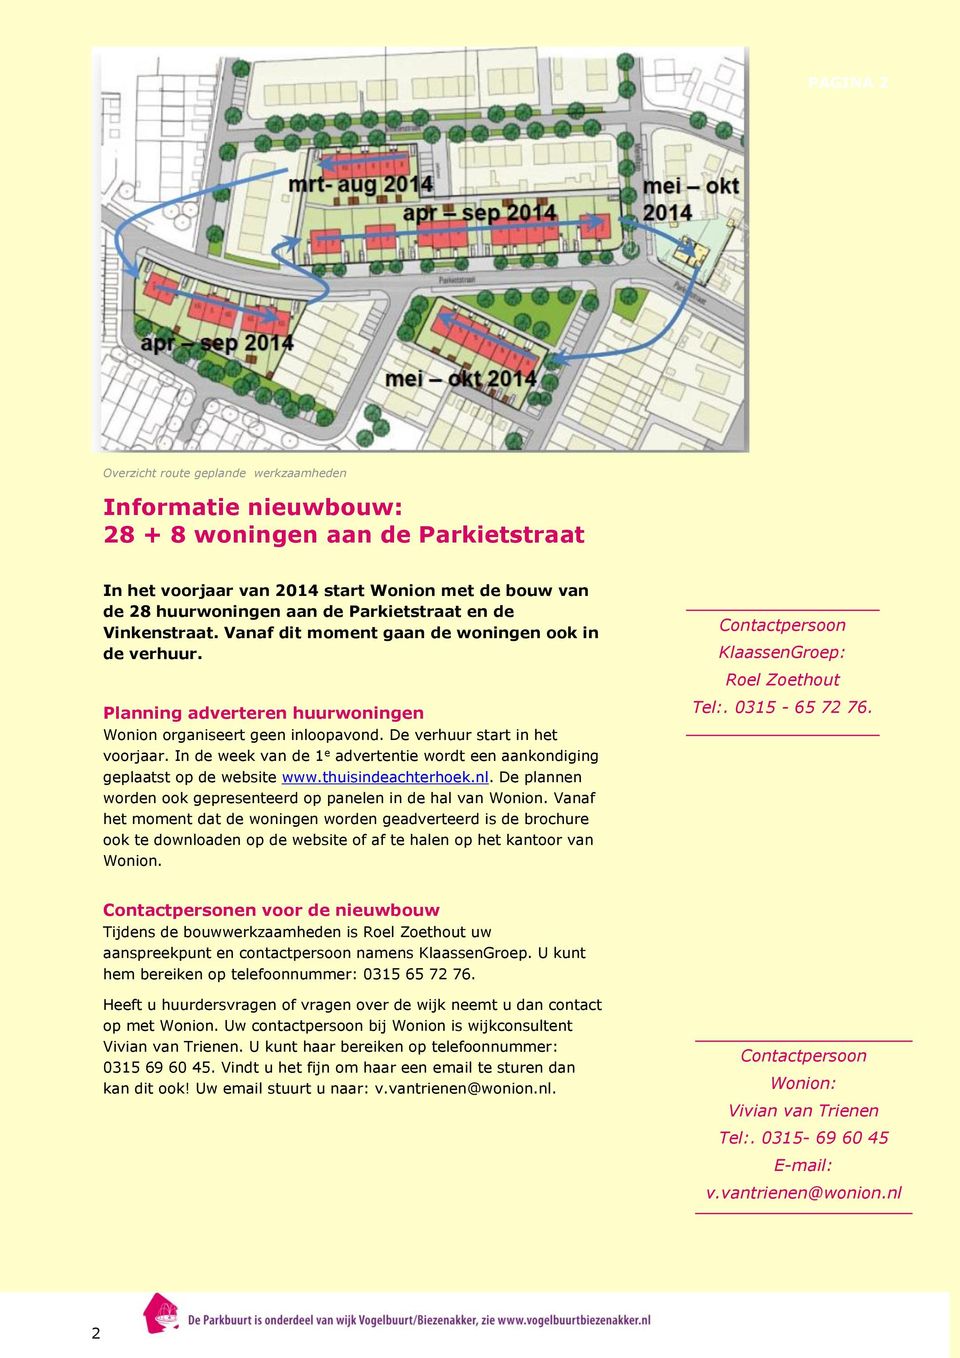 In de week van de 1 e advertentie wordt een aankondiging geplaatst op de website www.thuisindeachterhoek.nl. De plannen worden ook gepresenteerd op panelen in de hal van Wonion.